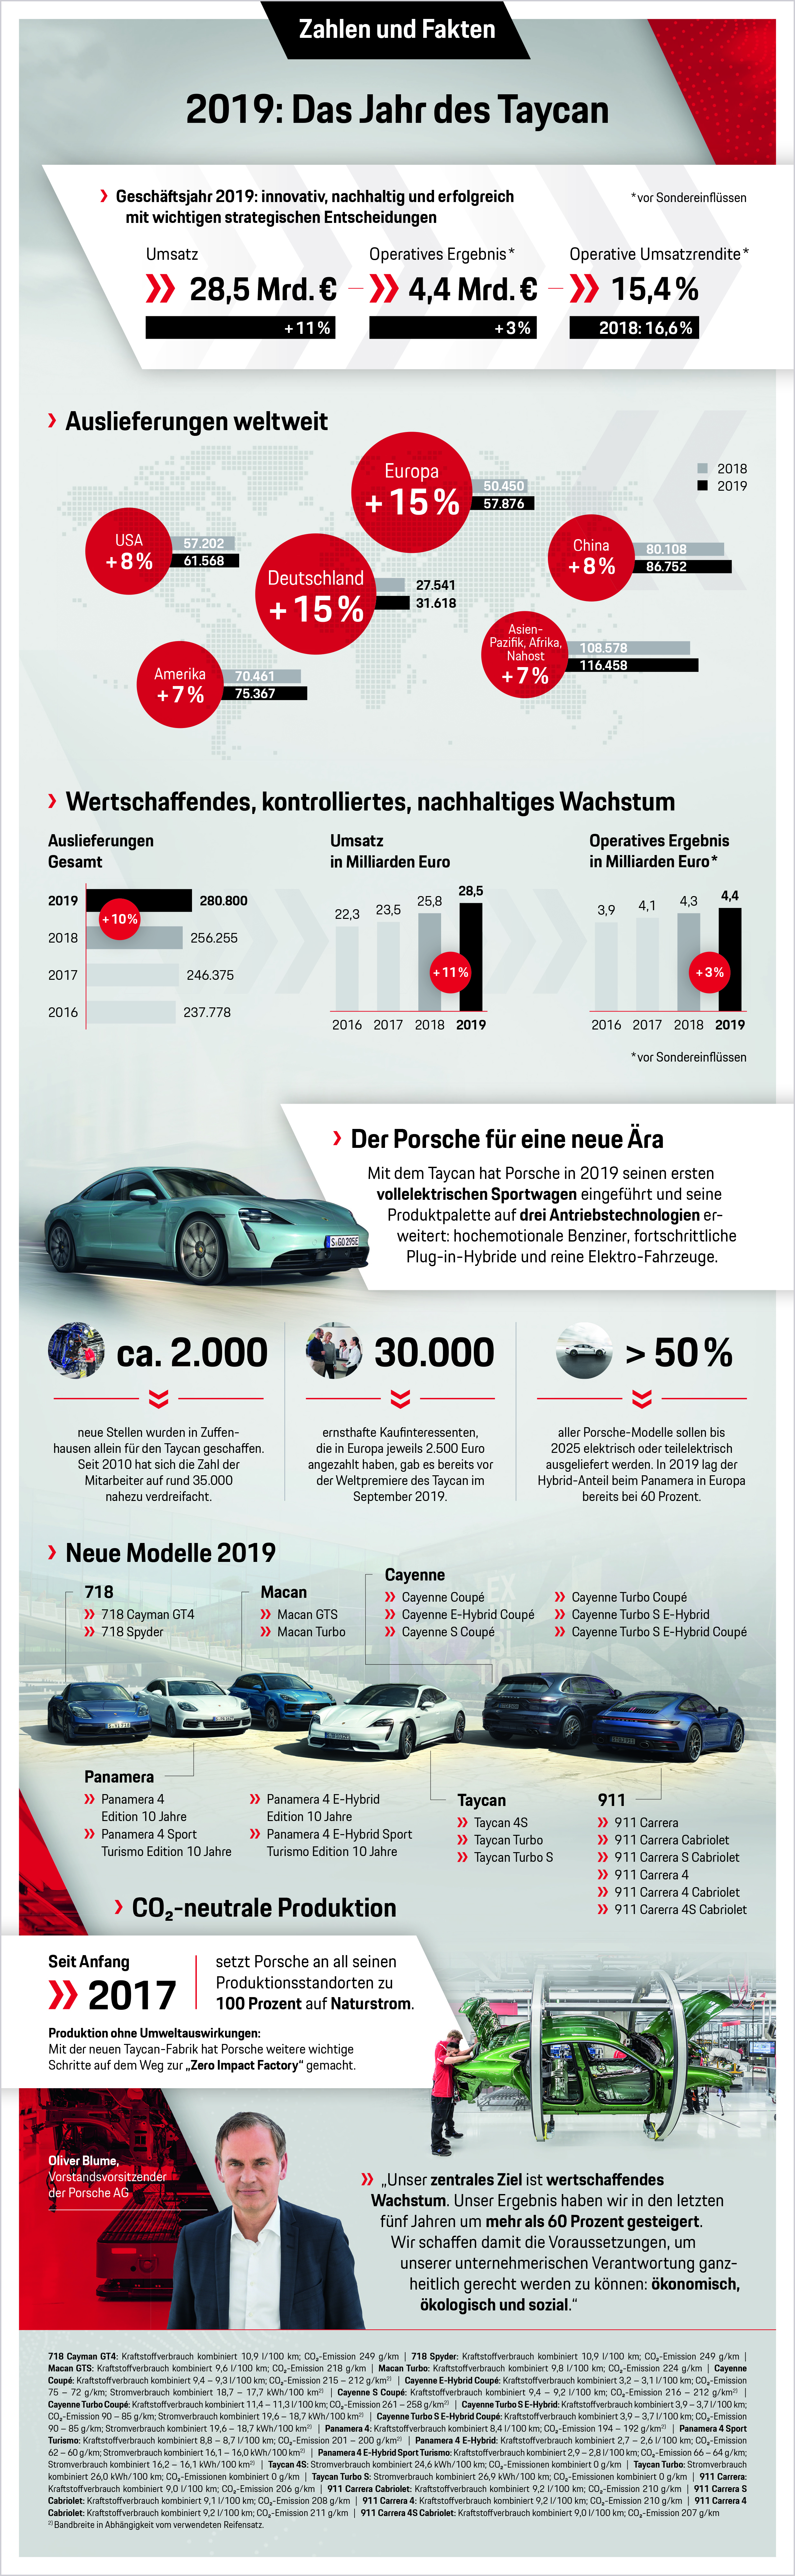 2019: Das Jahr des Taycan, Infografik, 2020, Porsche AG